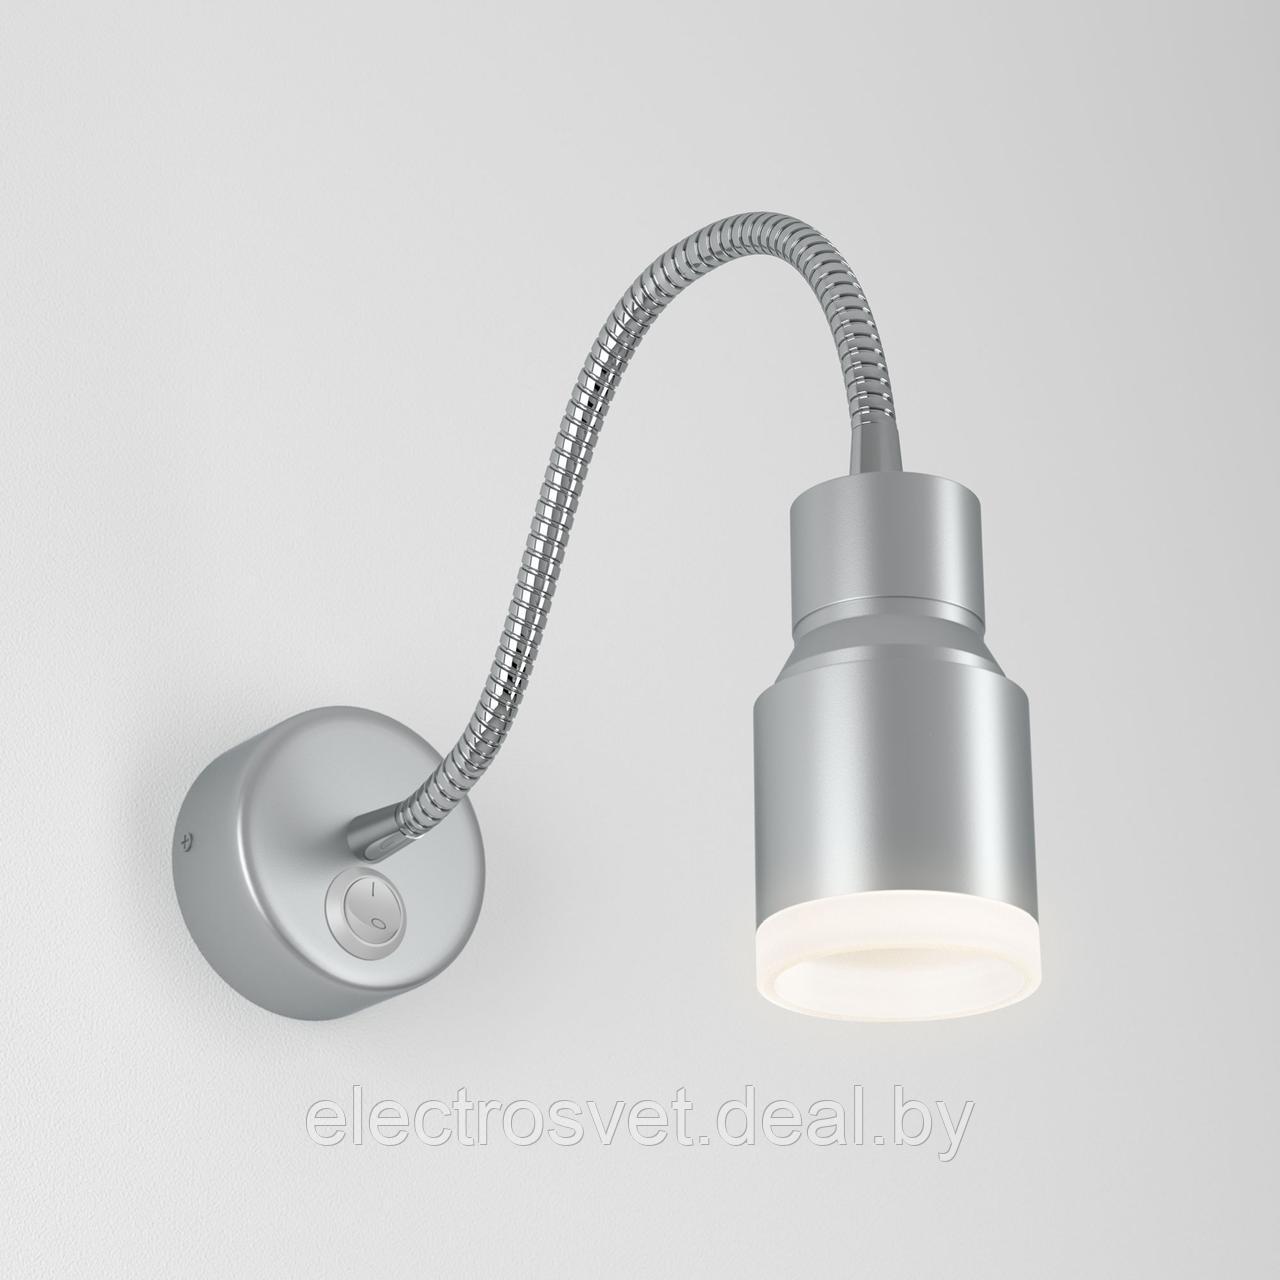 Светодиодный светильник с гибким основанием Molly LED серебро